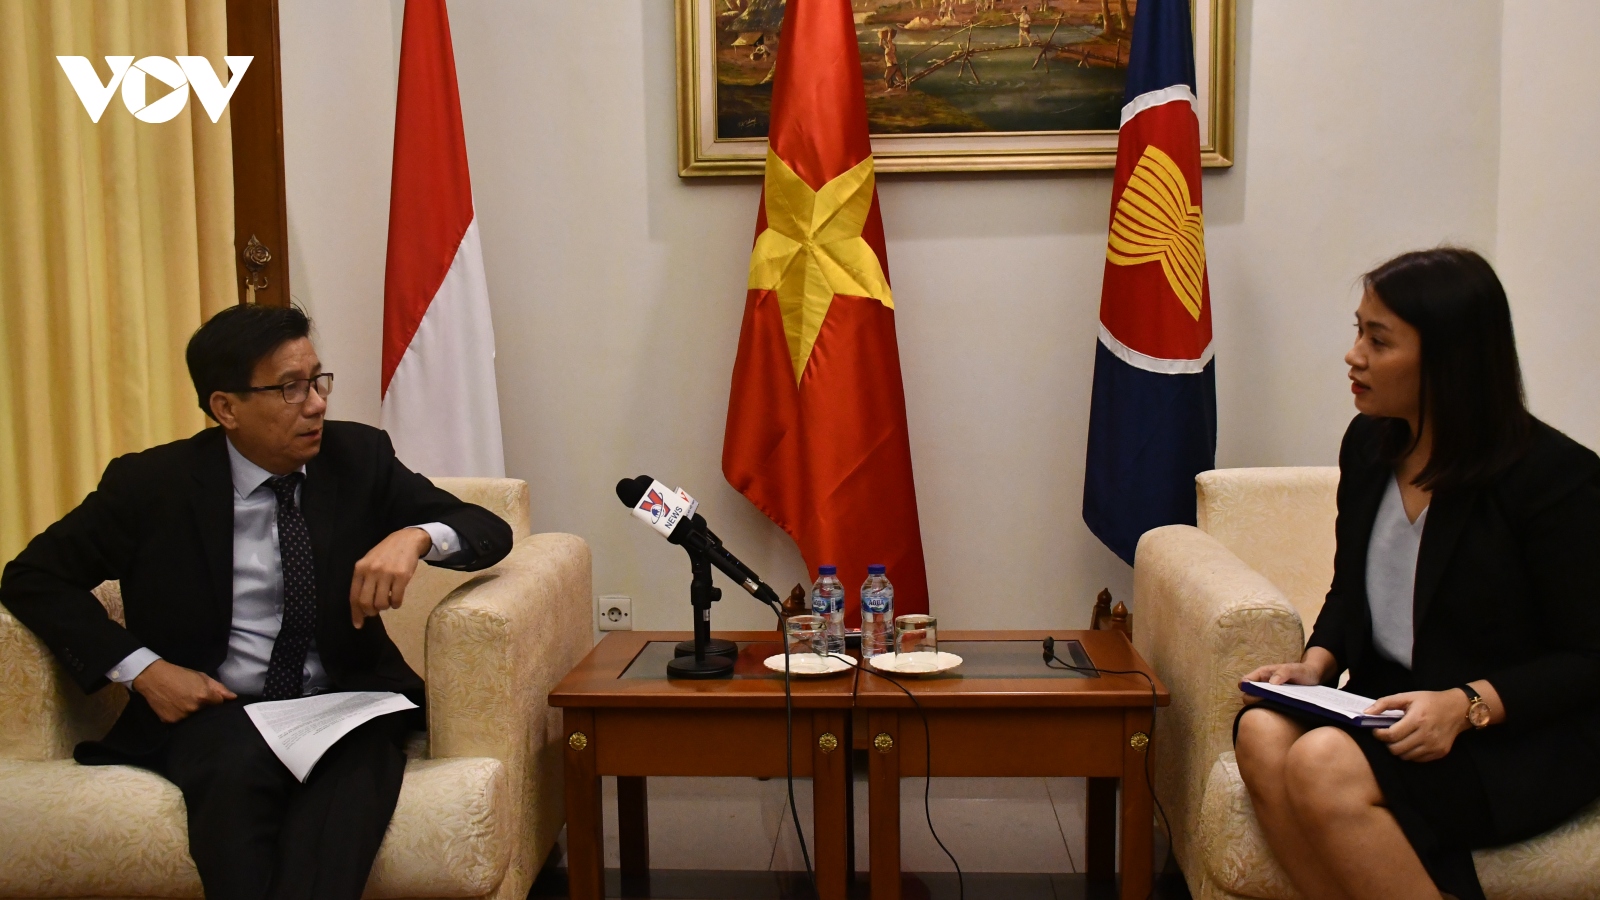 Chủ tịch nước thăm Indonesia: Hai bên có lợi ích tương đồng, lợi ích chiến lược